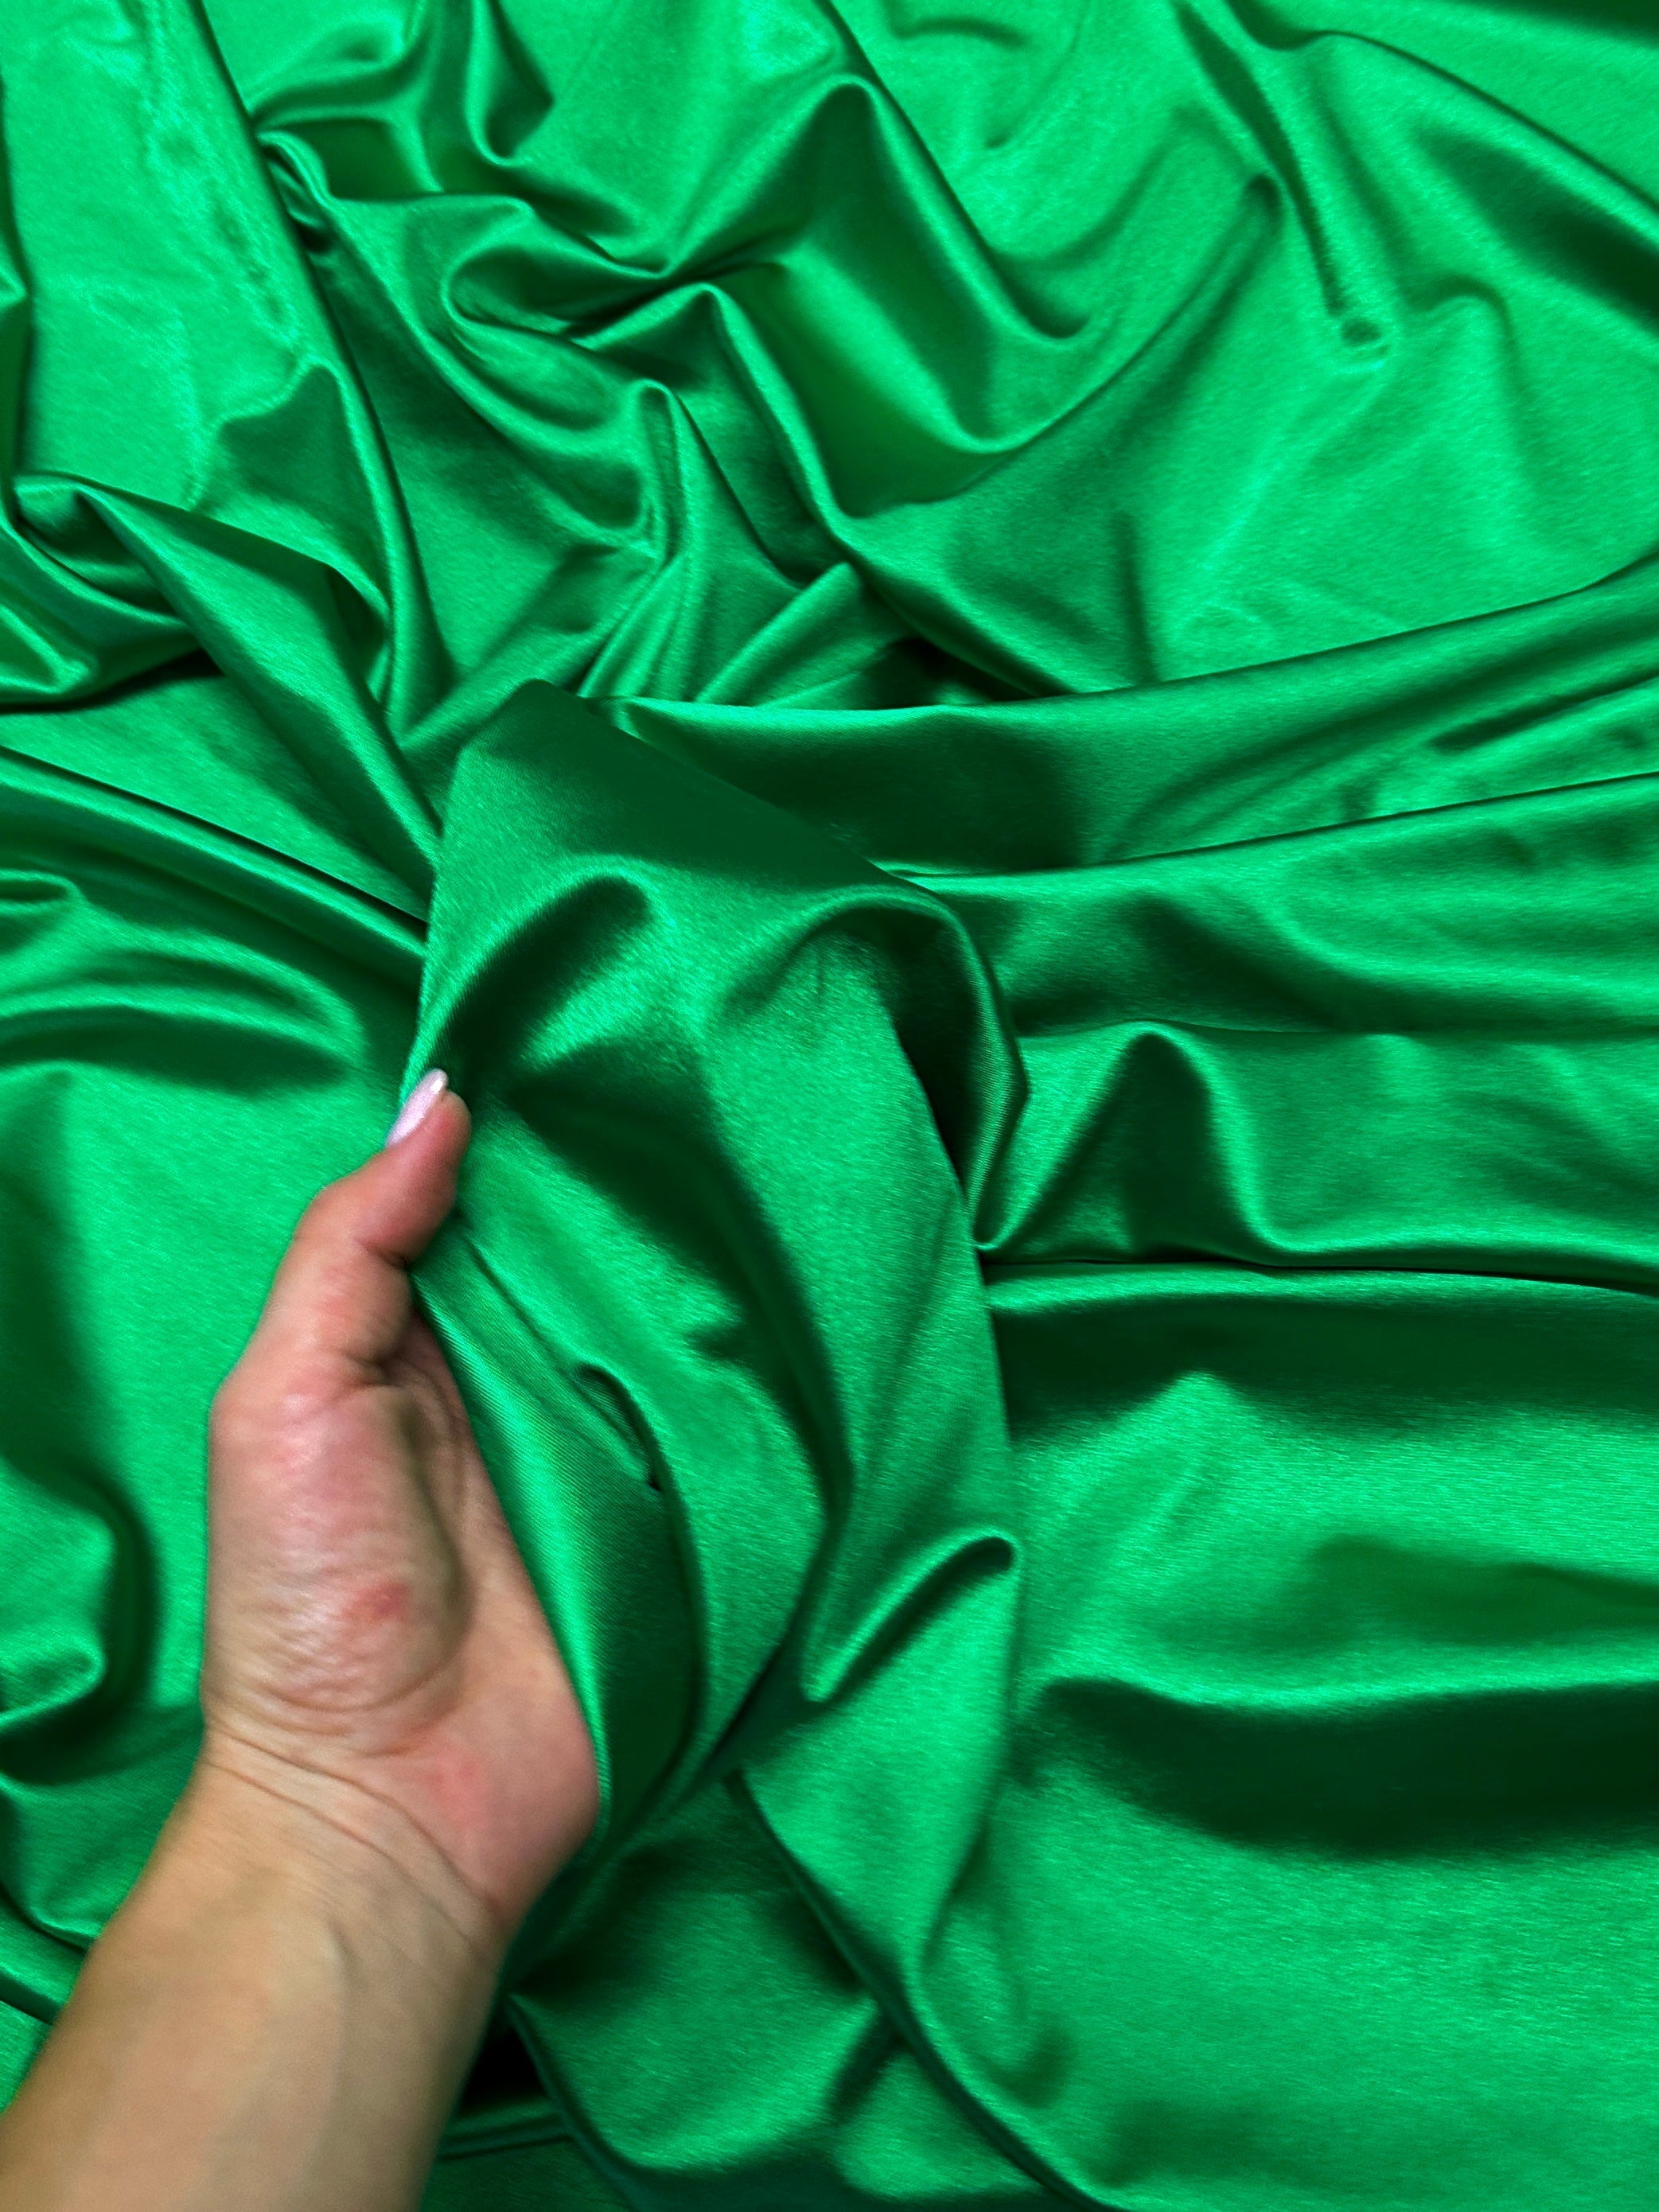 emrald green nylon spandex, dark green nylon spandex, light green spandex, lime green nylon spandex, khaki green shiny nylon spandex for woman, shiny nylon for bride, spandex for swim wear, premium spandex, spandex on sale, low price spandex